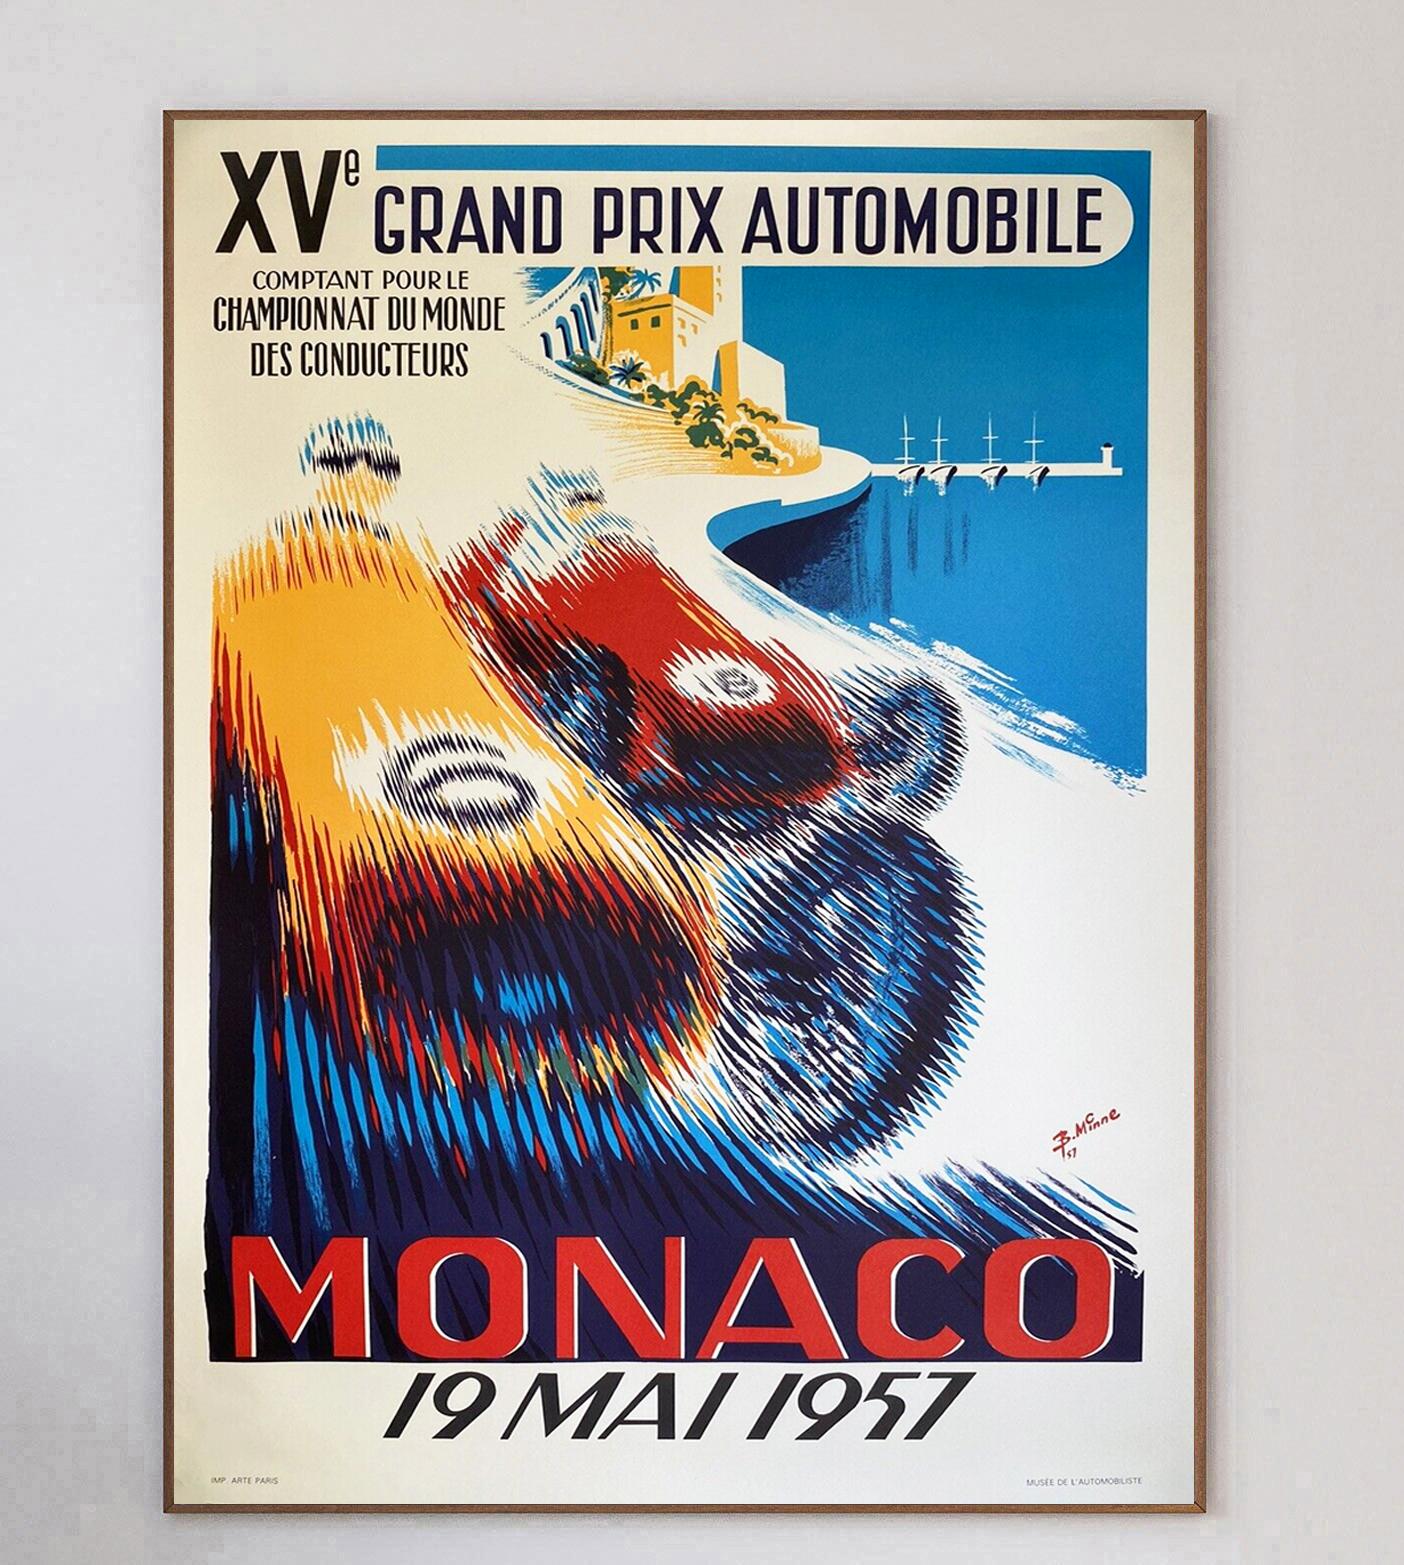 Cette affiche est celle du Grand Prix de Monaco 1957, avec la brillante illustration de B. Brilliante. Les couleurs vives et éclatantes du dessin illustrent le contraste entre les voitures de course, le soleil et la mer de Monaco.

Ce superbe